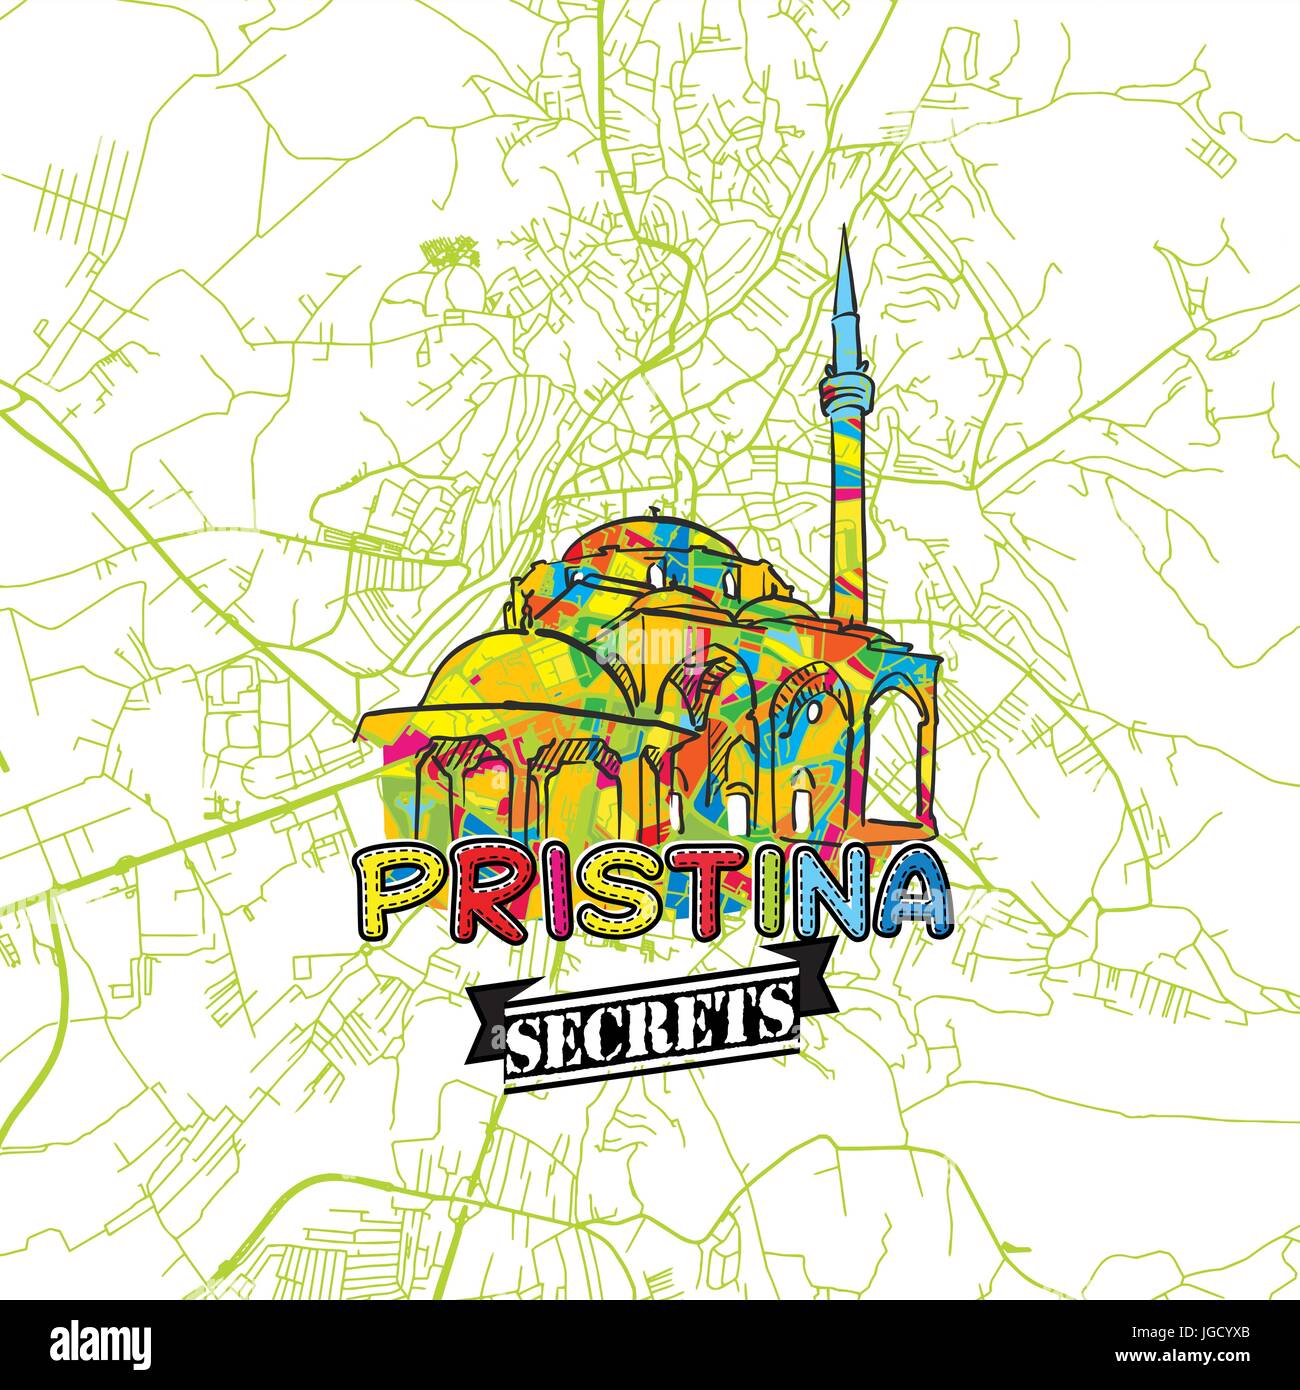 Pristina Billet d'Art Secrets Site pour la cartographie des experts et des guides de voyage. Le logo de la ville à la main, typo de badge et dessinés à la main sur le dessus de l'image vectorielle sont regroupés un Illustration de Vecteur